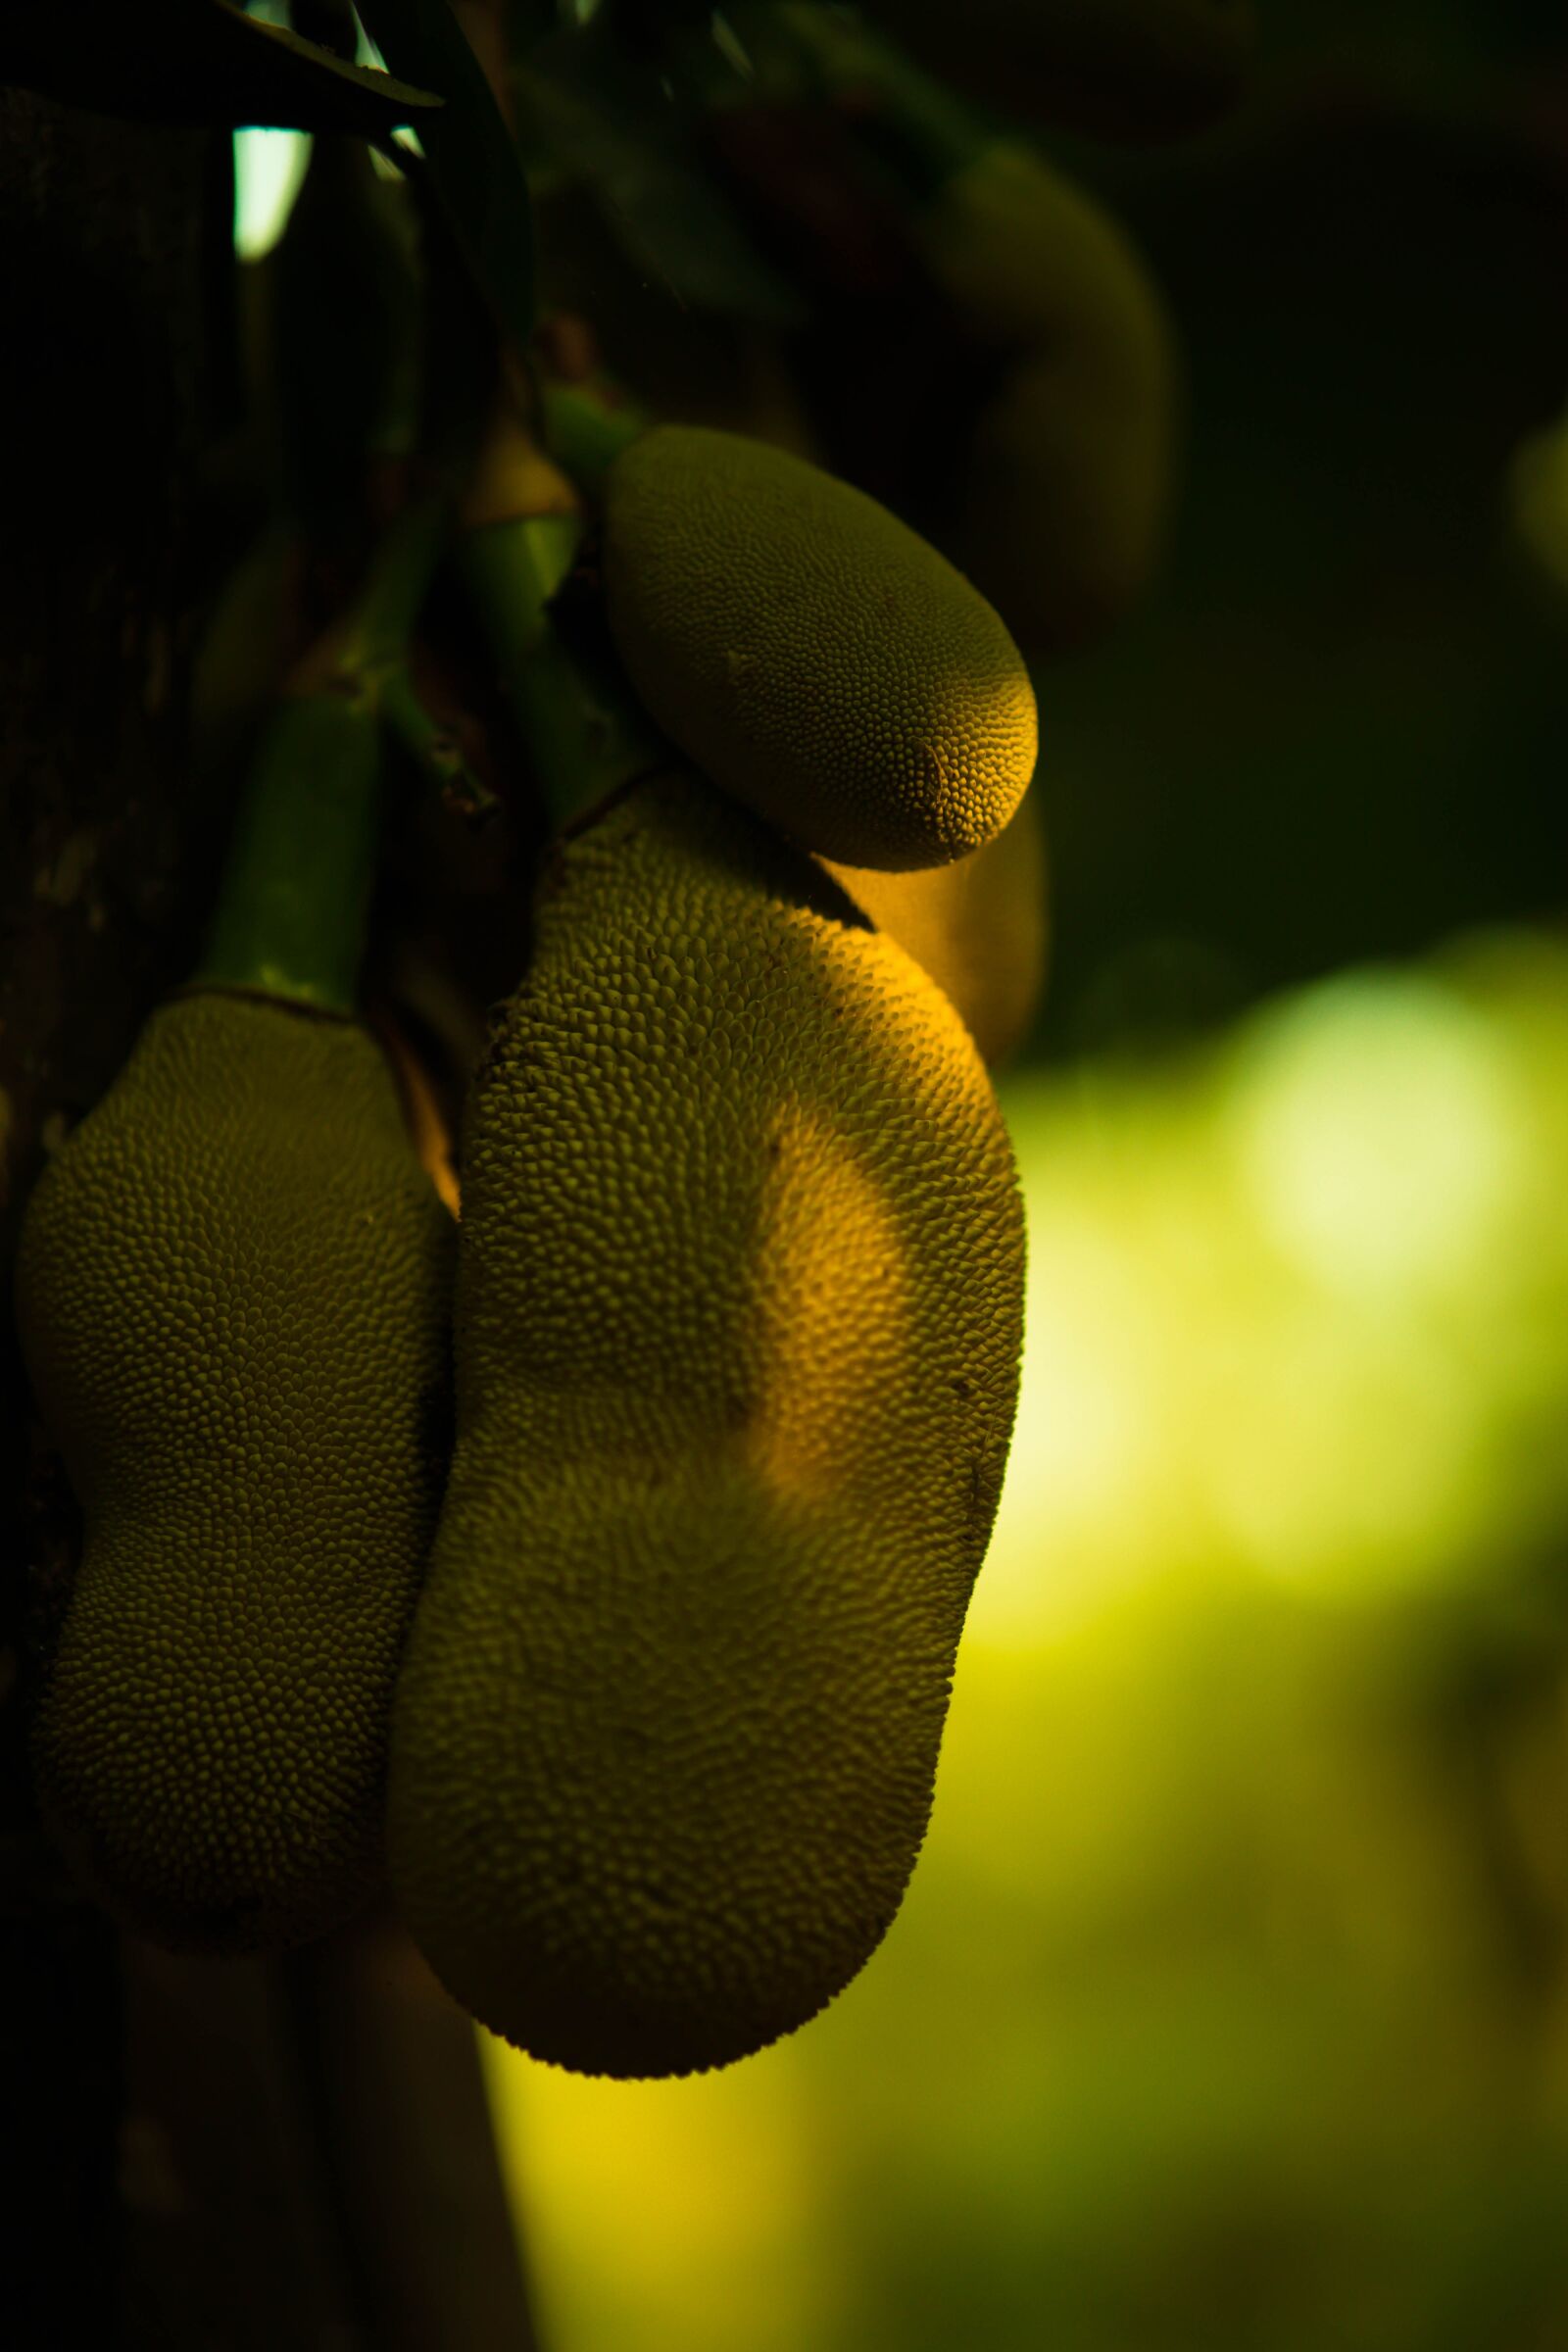 Samyang AF 85mm F1.4 FE sample photo. Jackfruit, green, tree photography